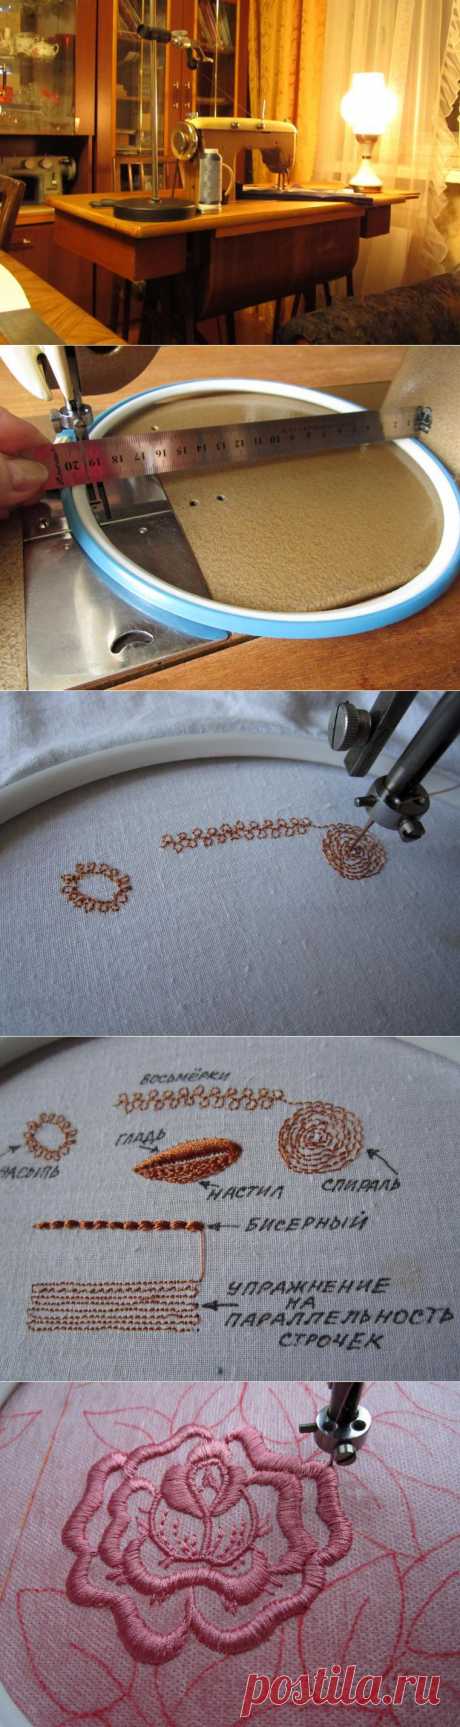 Осваиваем вышивку на простой швейной машинке - Ярмарка Мастеров - ручная работа, handmade